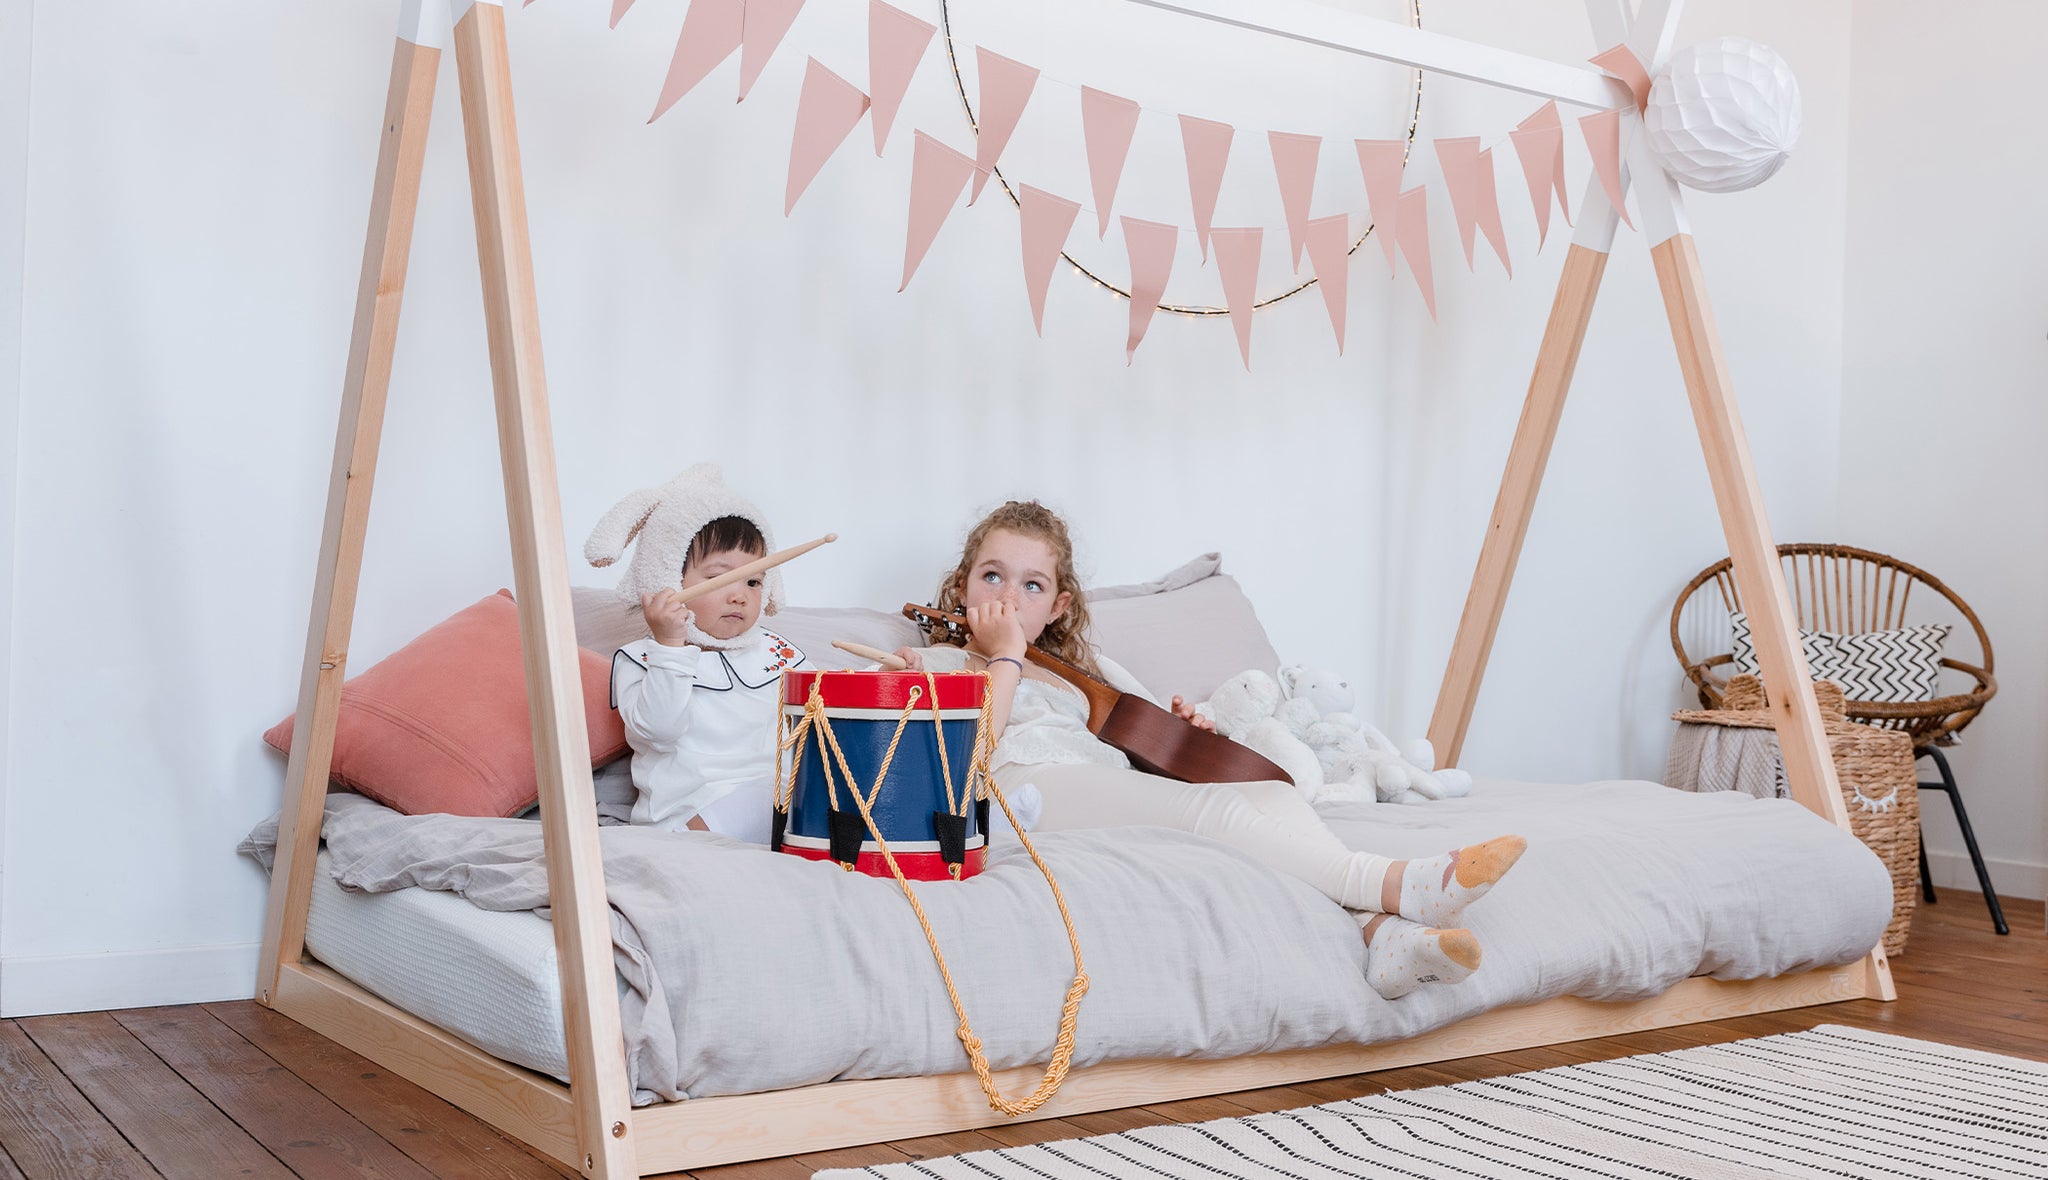 Cama casita infantil de madera inspirada en Método Montessori, Envío  gratis